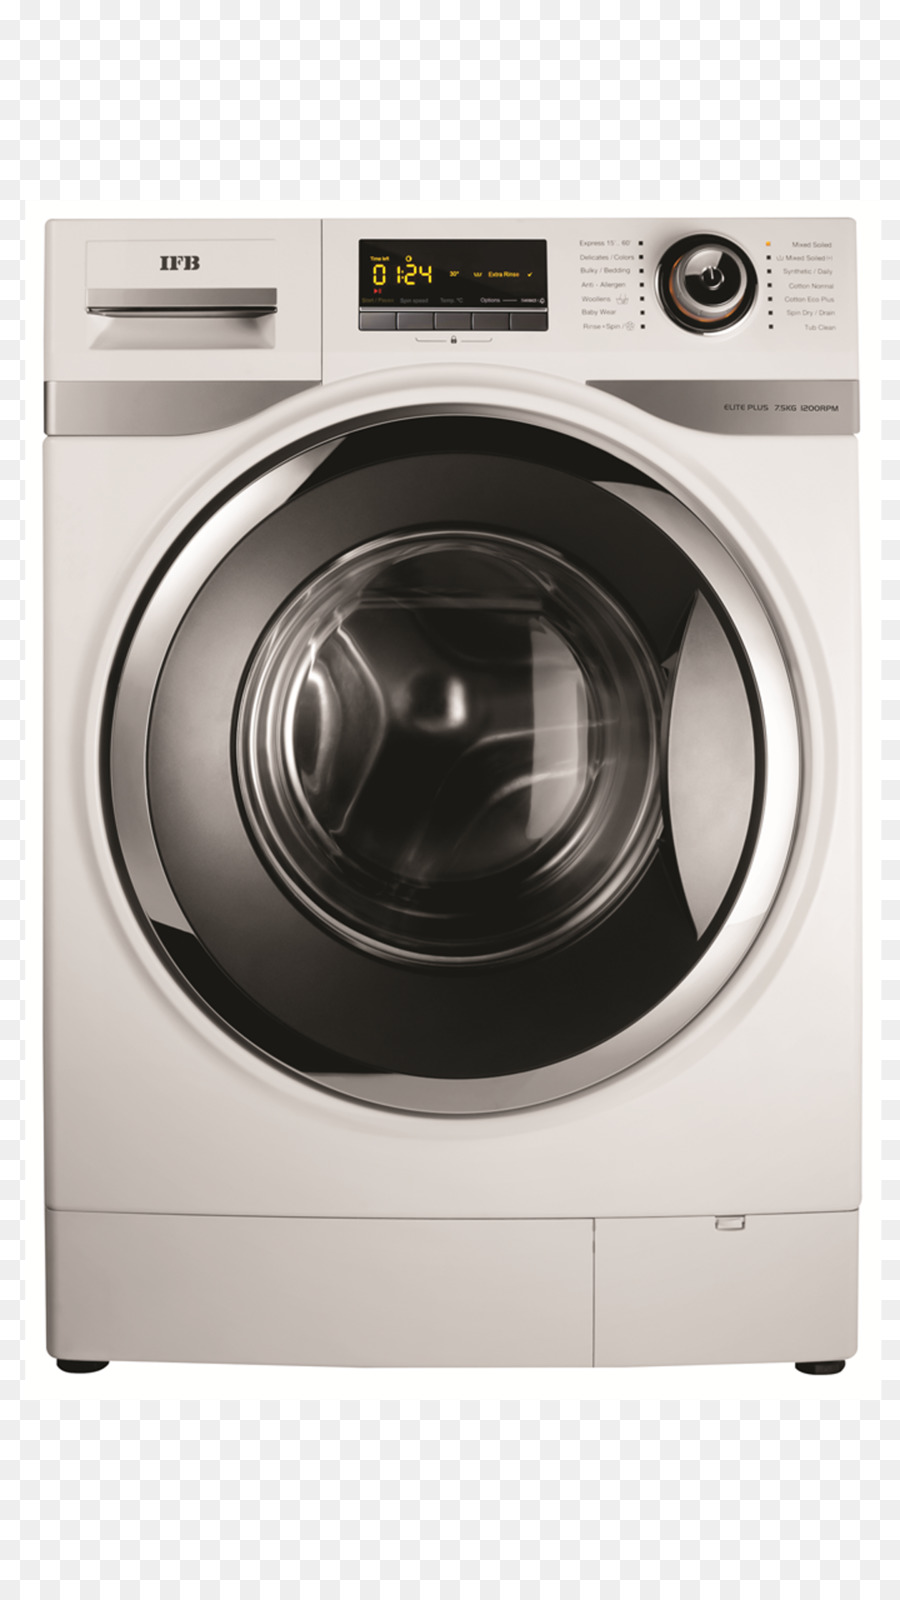 Waschmaschinen-Hausgeräte-Direktantrieb-Mechanismus IFB-Punkt - Trockner